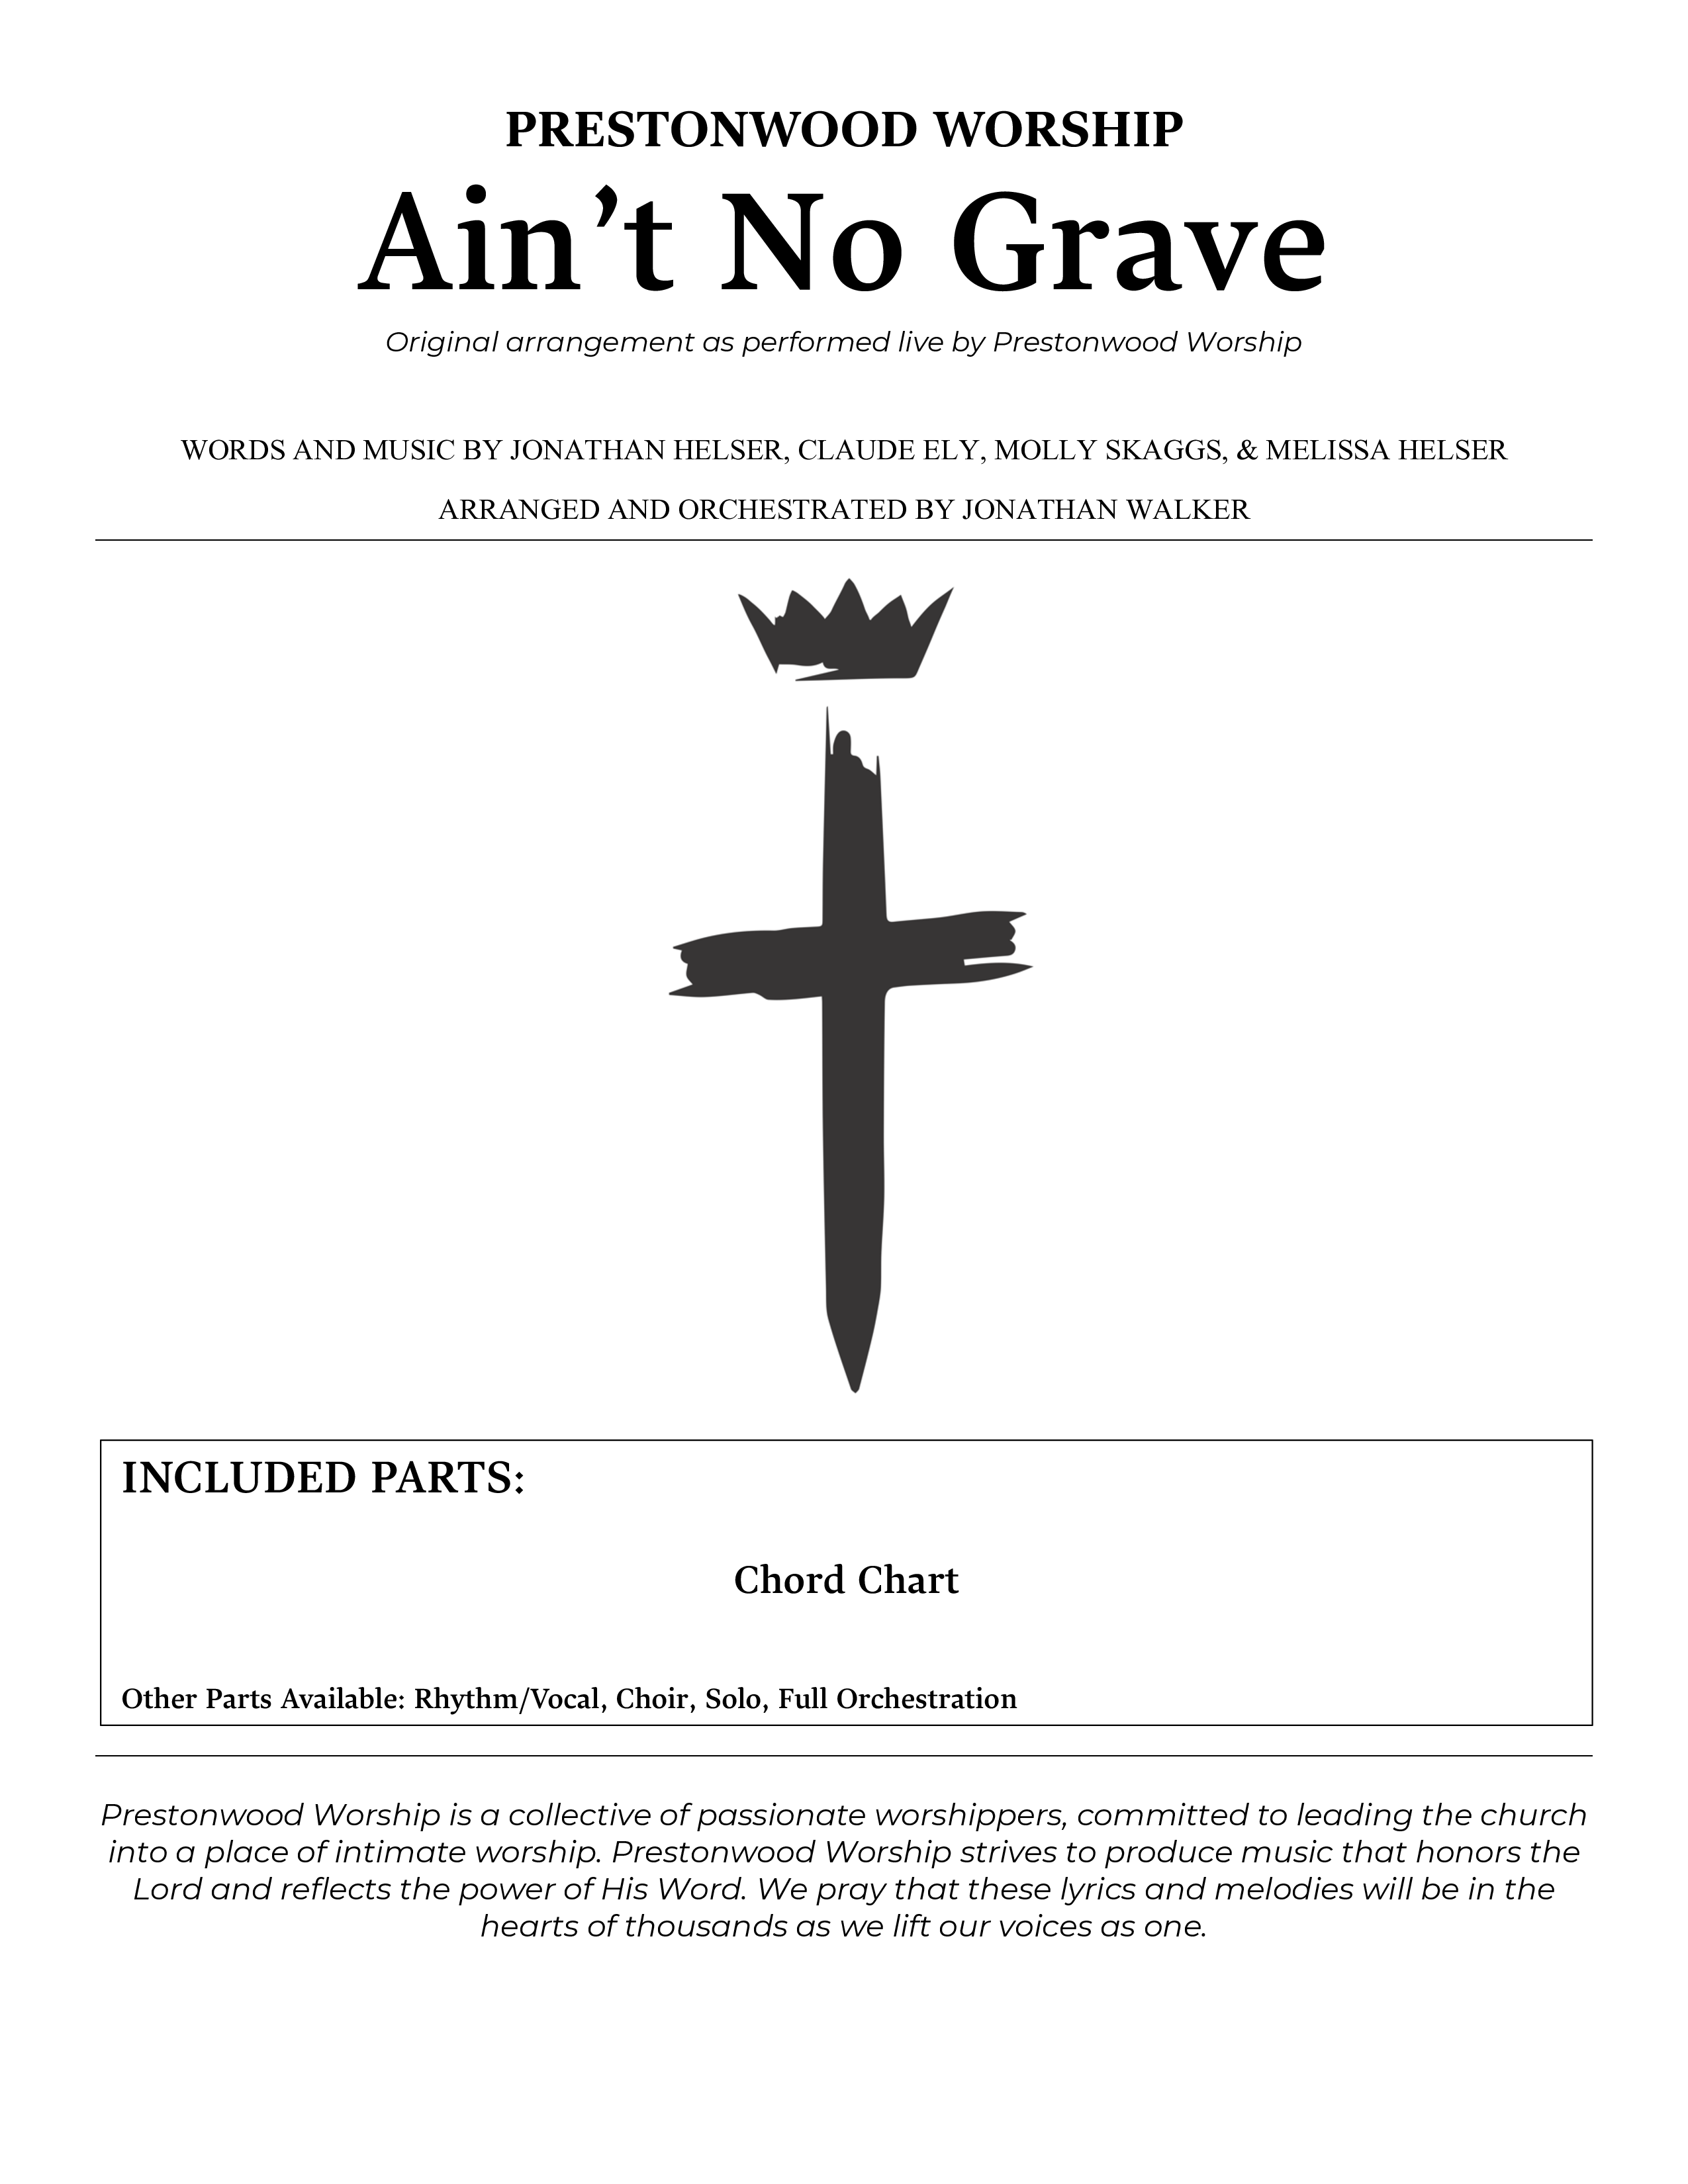 Ain't No Grave (Choral Anthem SATB) Chords & Lyrics (Prestonwood Choir / Prestonwood Worship / Arr. Jonathan Walker)